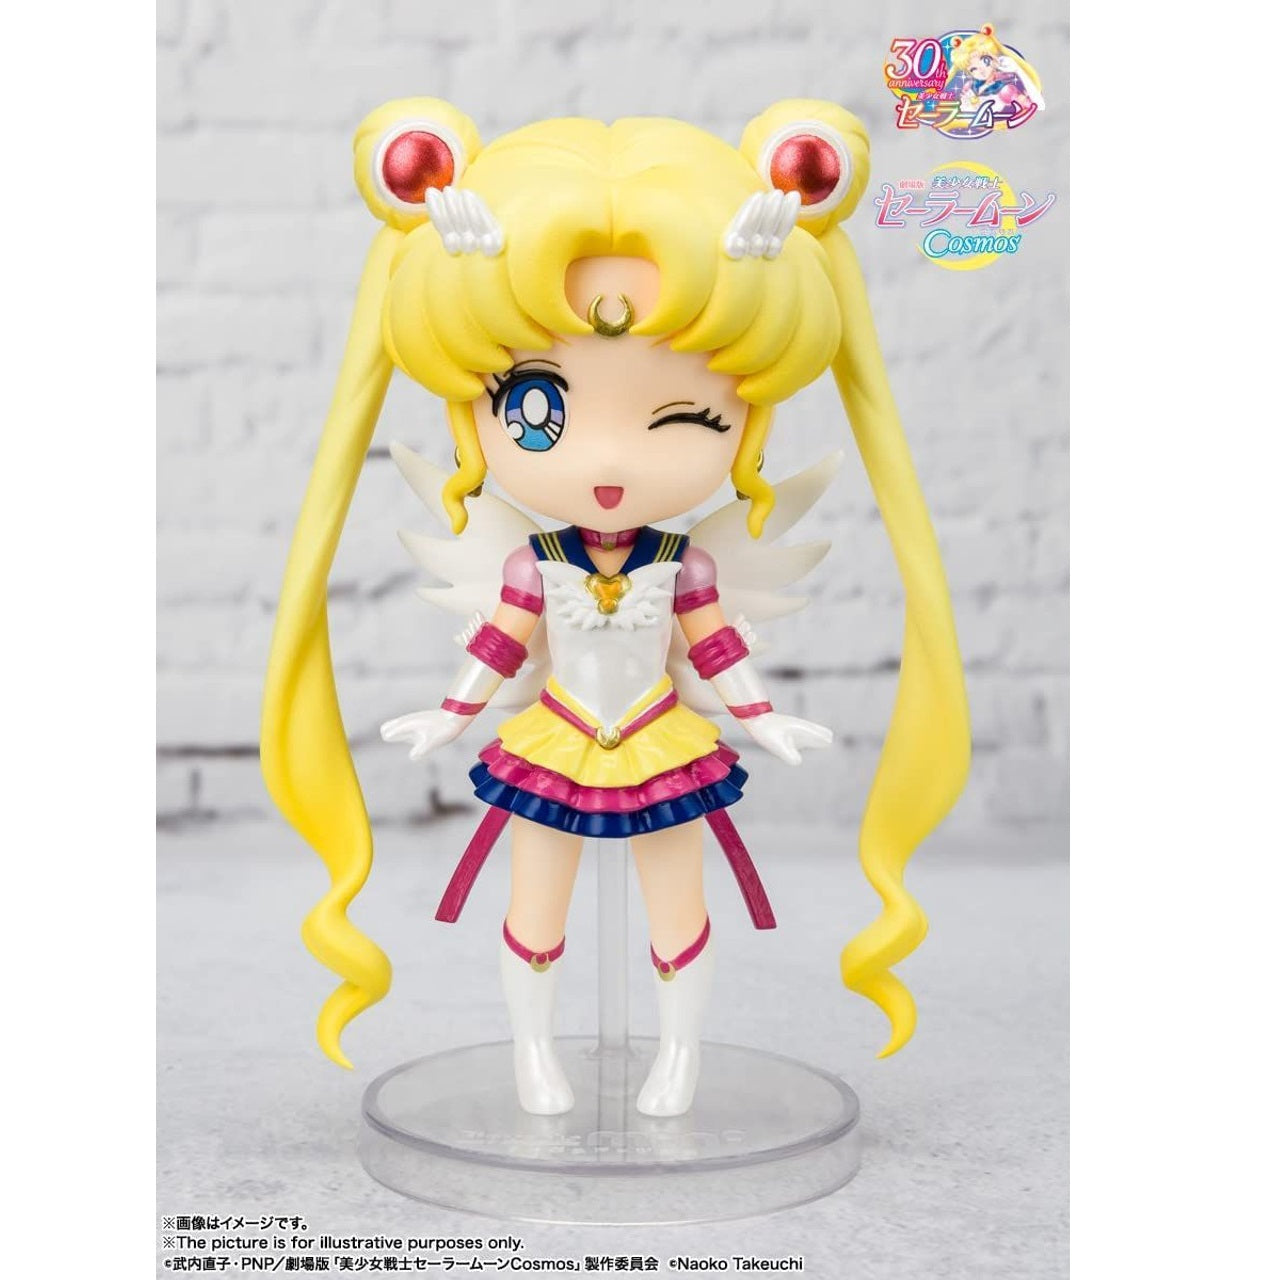 Sailor Moon -Figuarts Mini - "Eternal Sailor Moon Cosmos Edition"-Bandai-Ace Cards & Collectibles